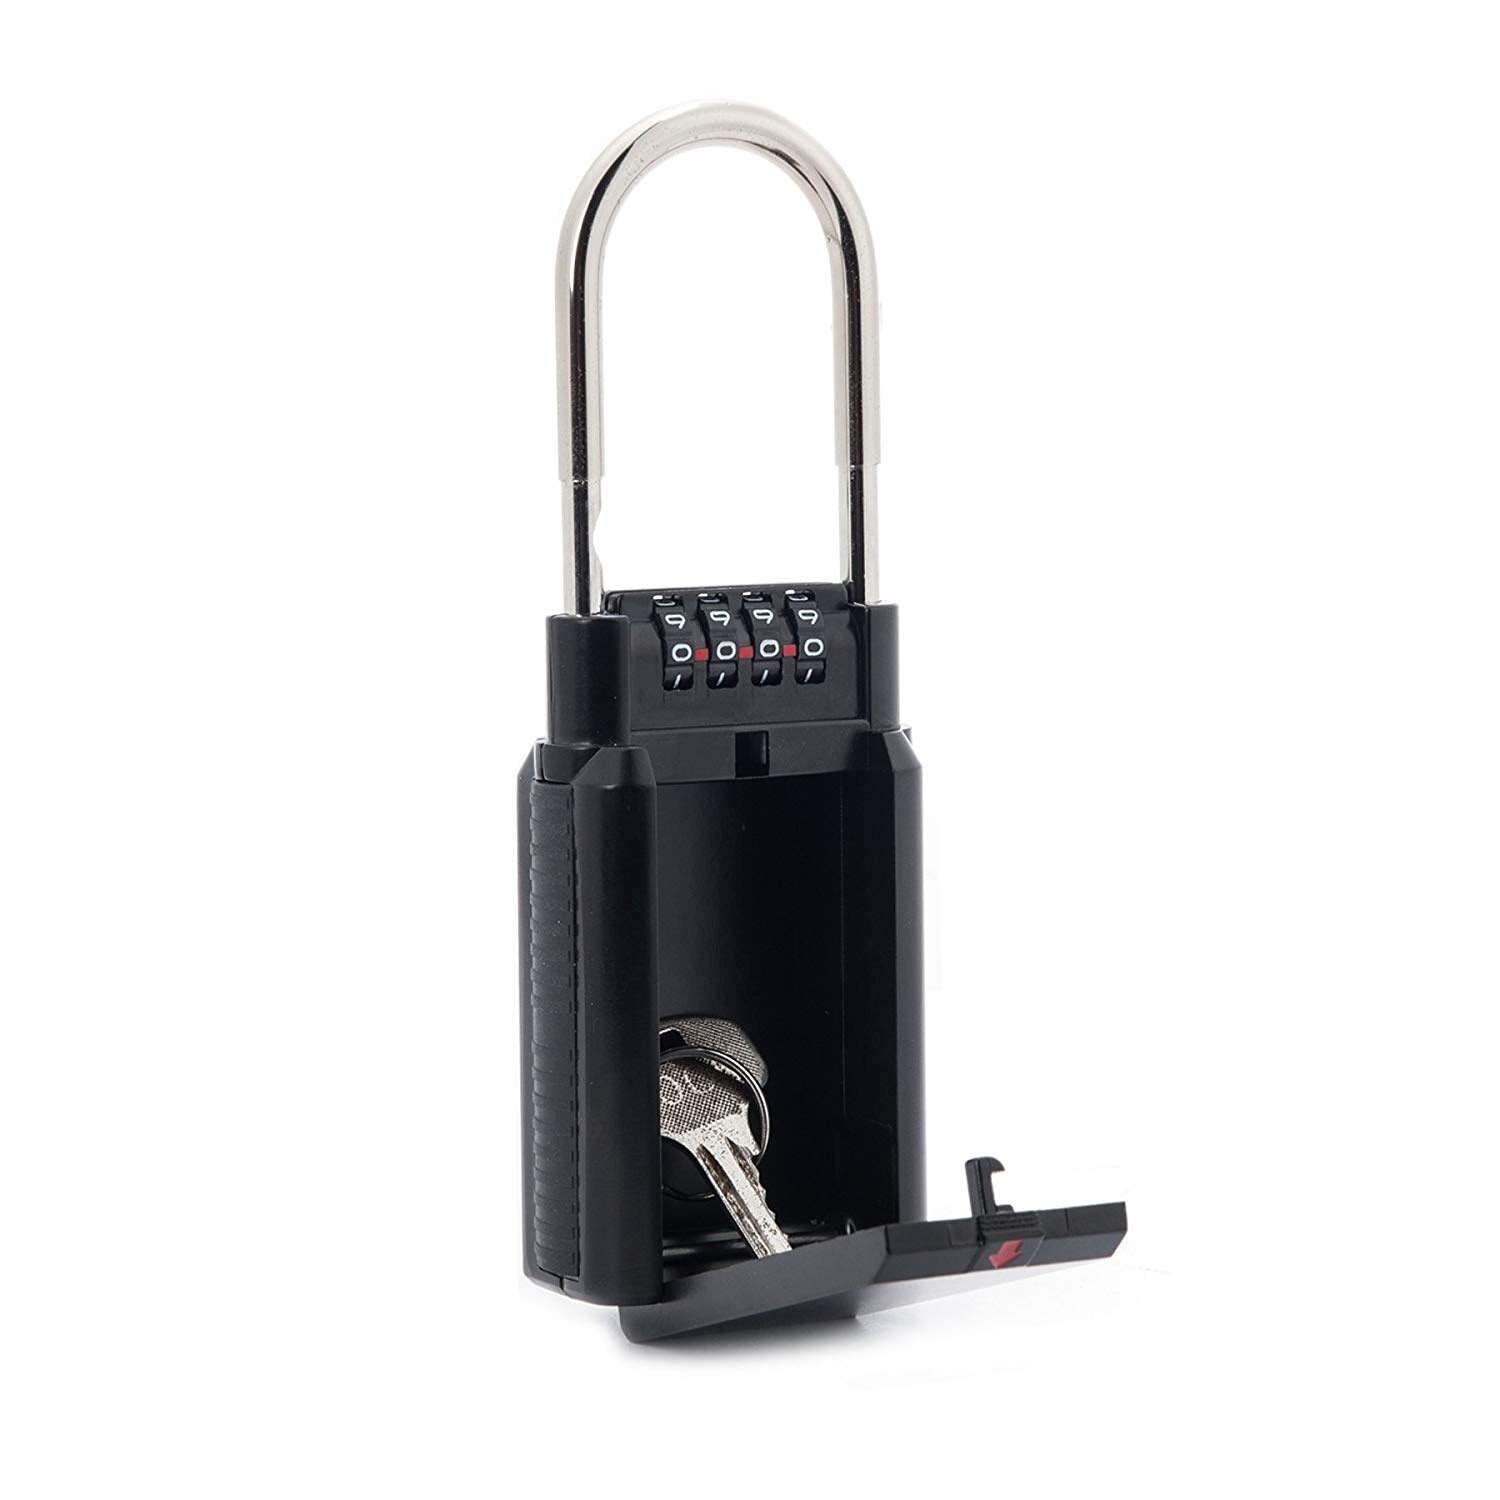 Combination Lock Box Key Storage Lock Box 4-Digit Combination Lock Waterproof Indoor/Outdoor - ebowsos